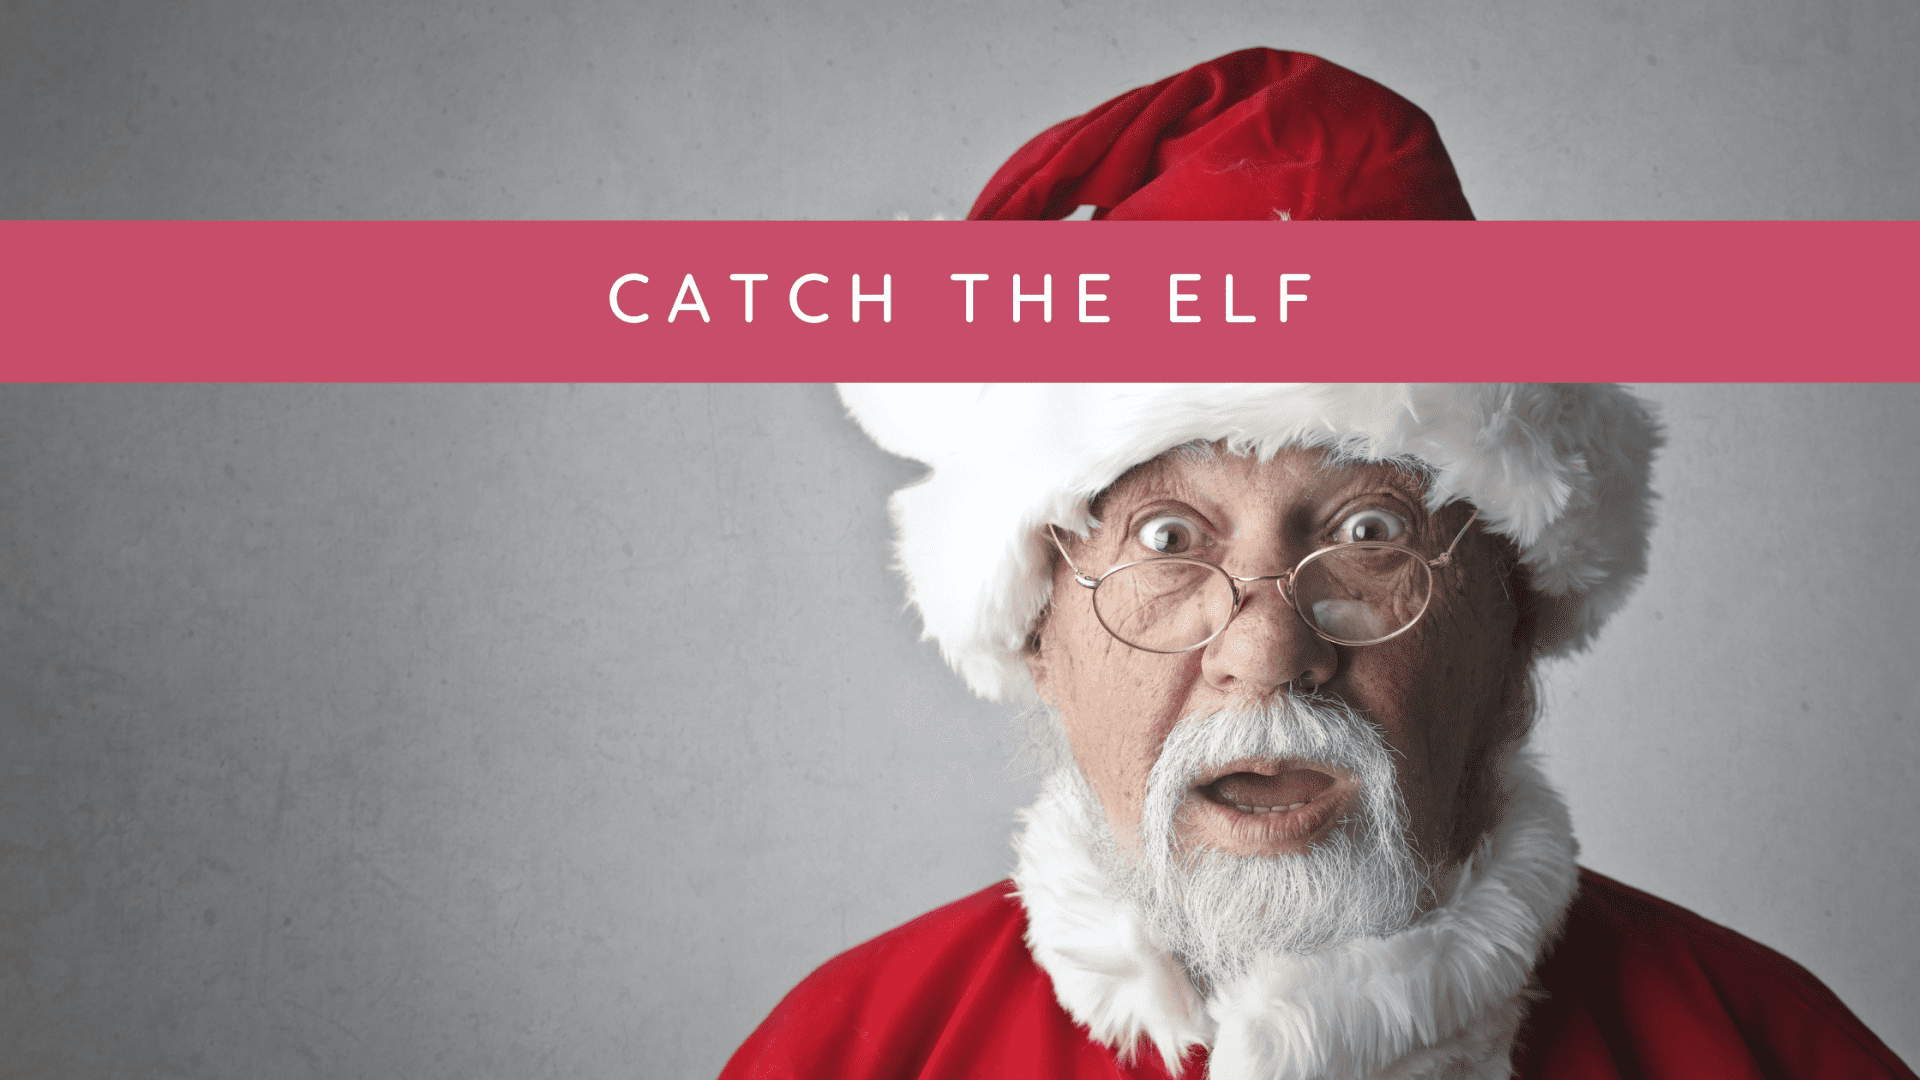 Catch the elf